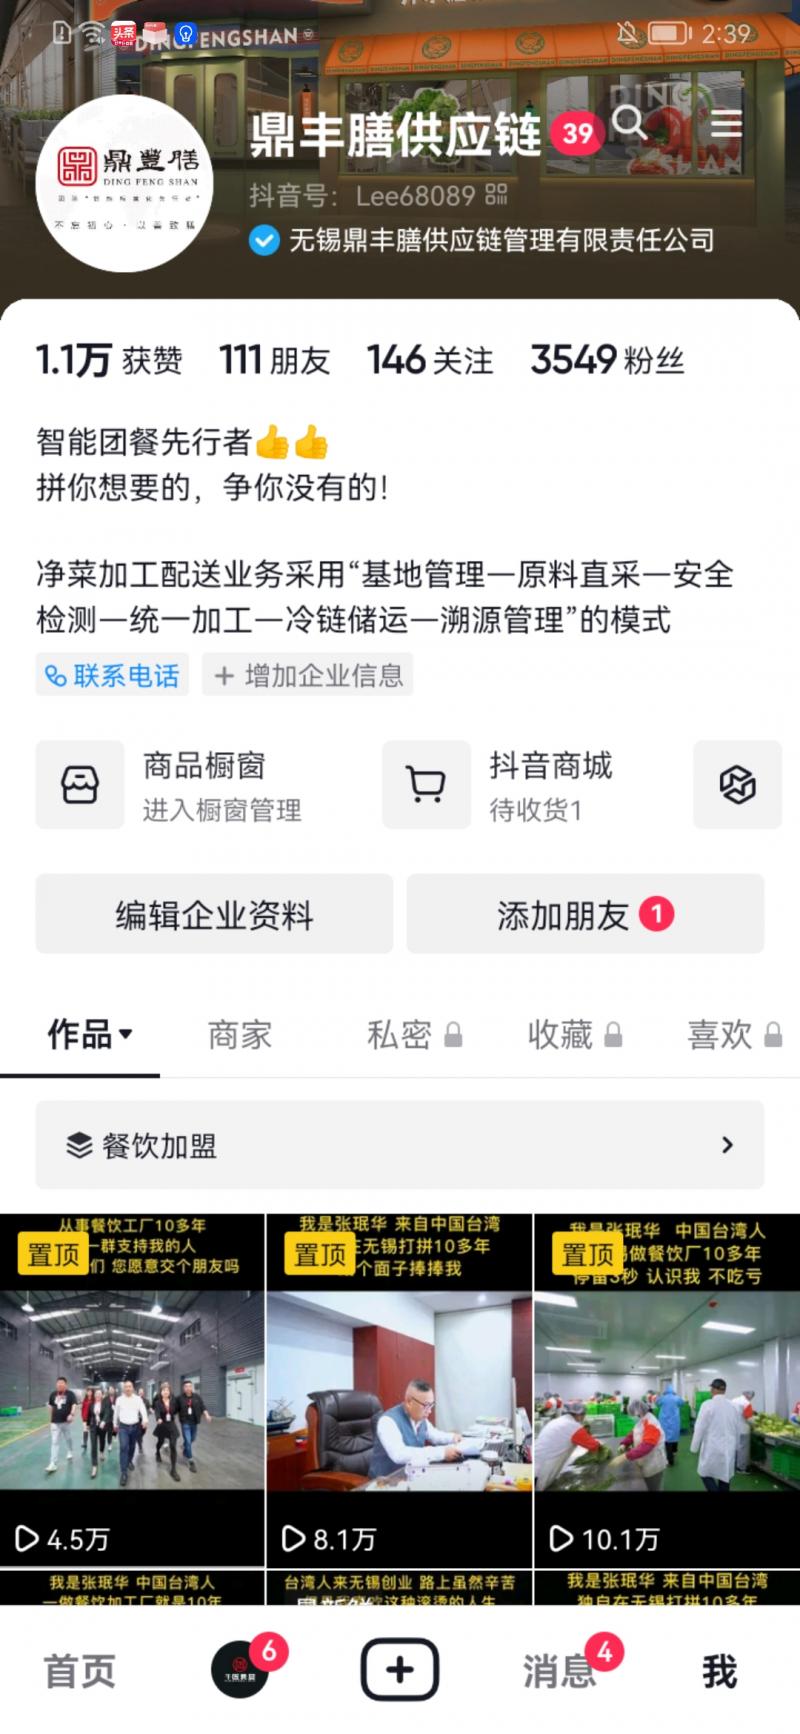 无锡鼎丰膳供应链管理有限责任公司-抖音短视频运营